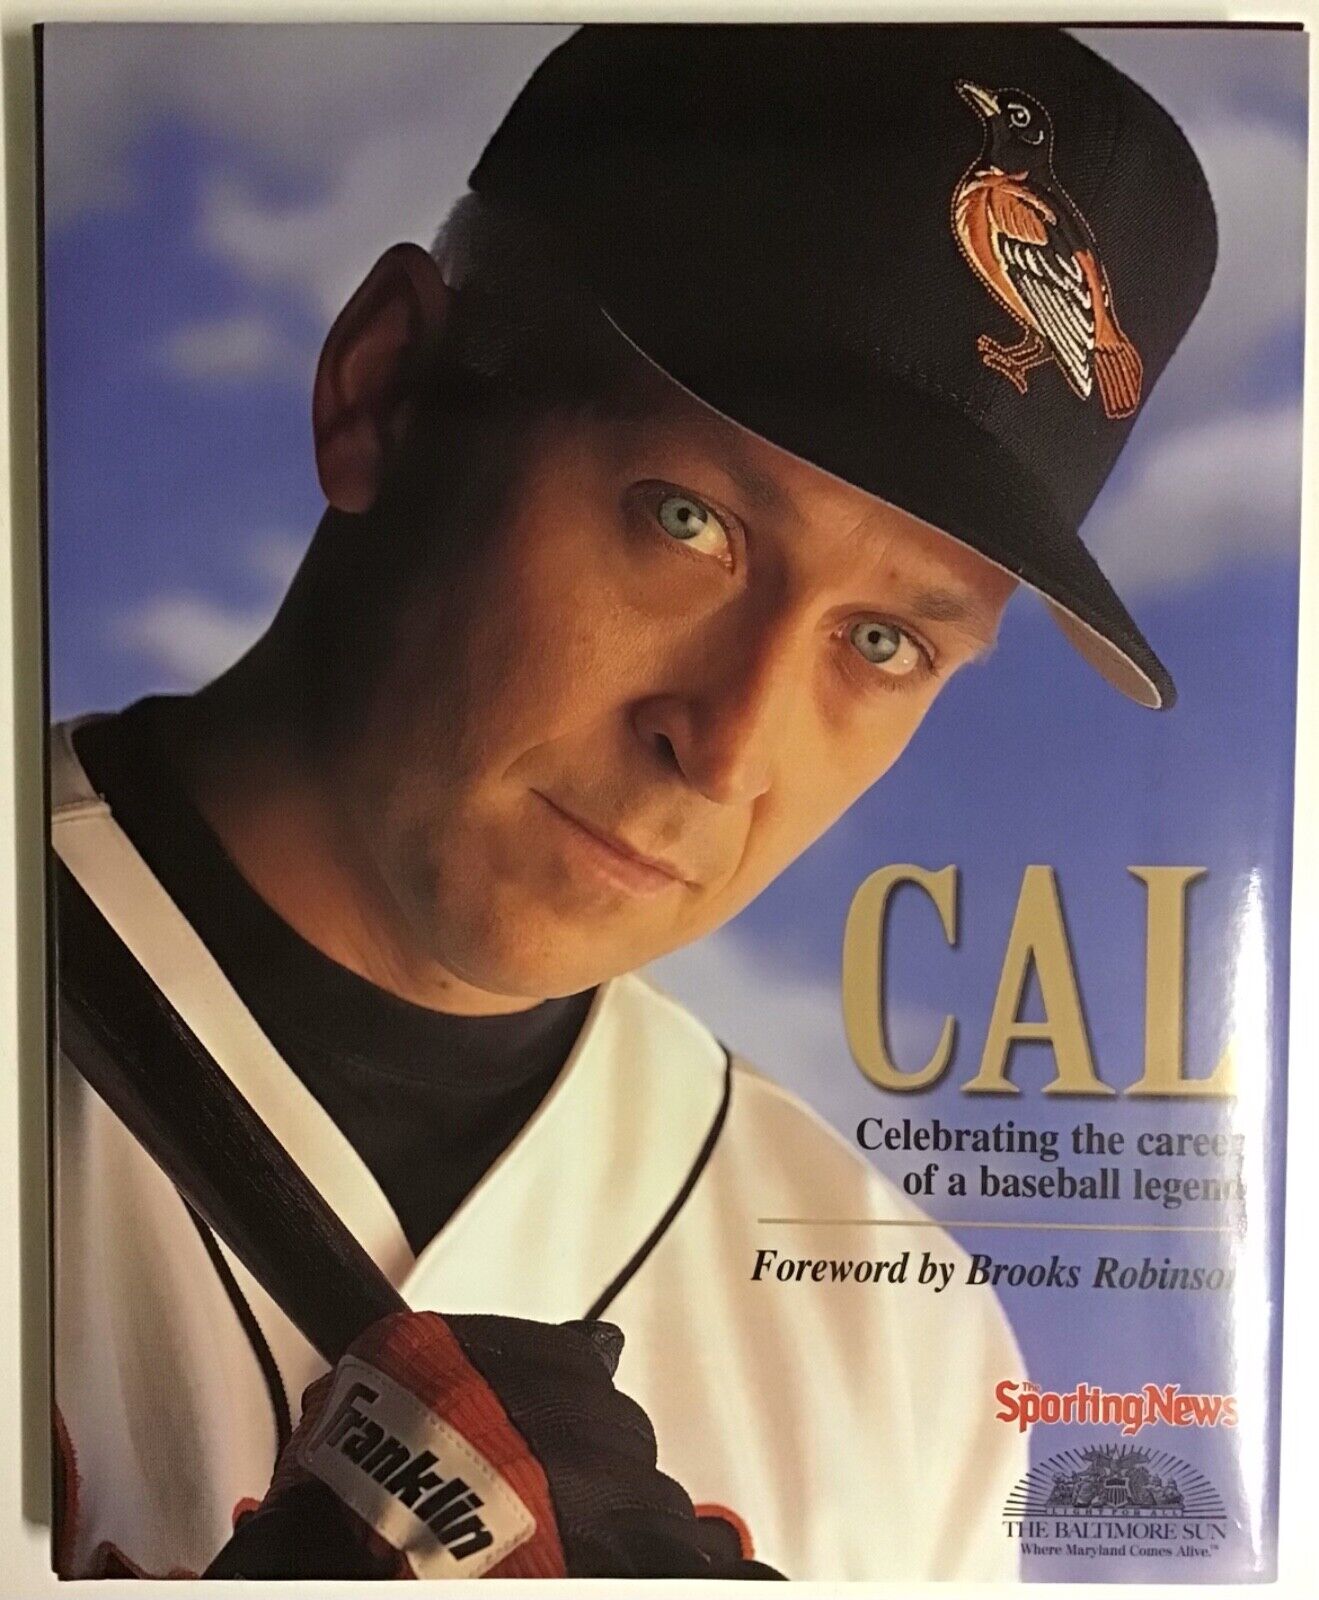 Cal Ripken, Jr-Celebrating The Career Of A Baseball Legend 2001 Hardcover  Без бренда